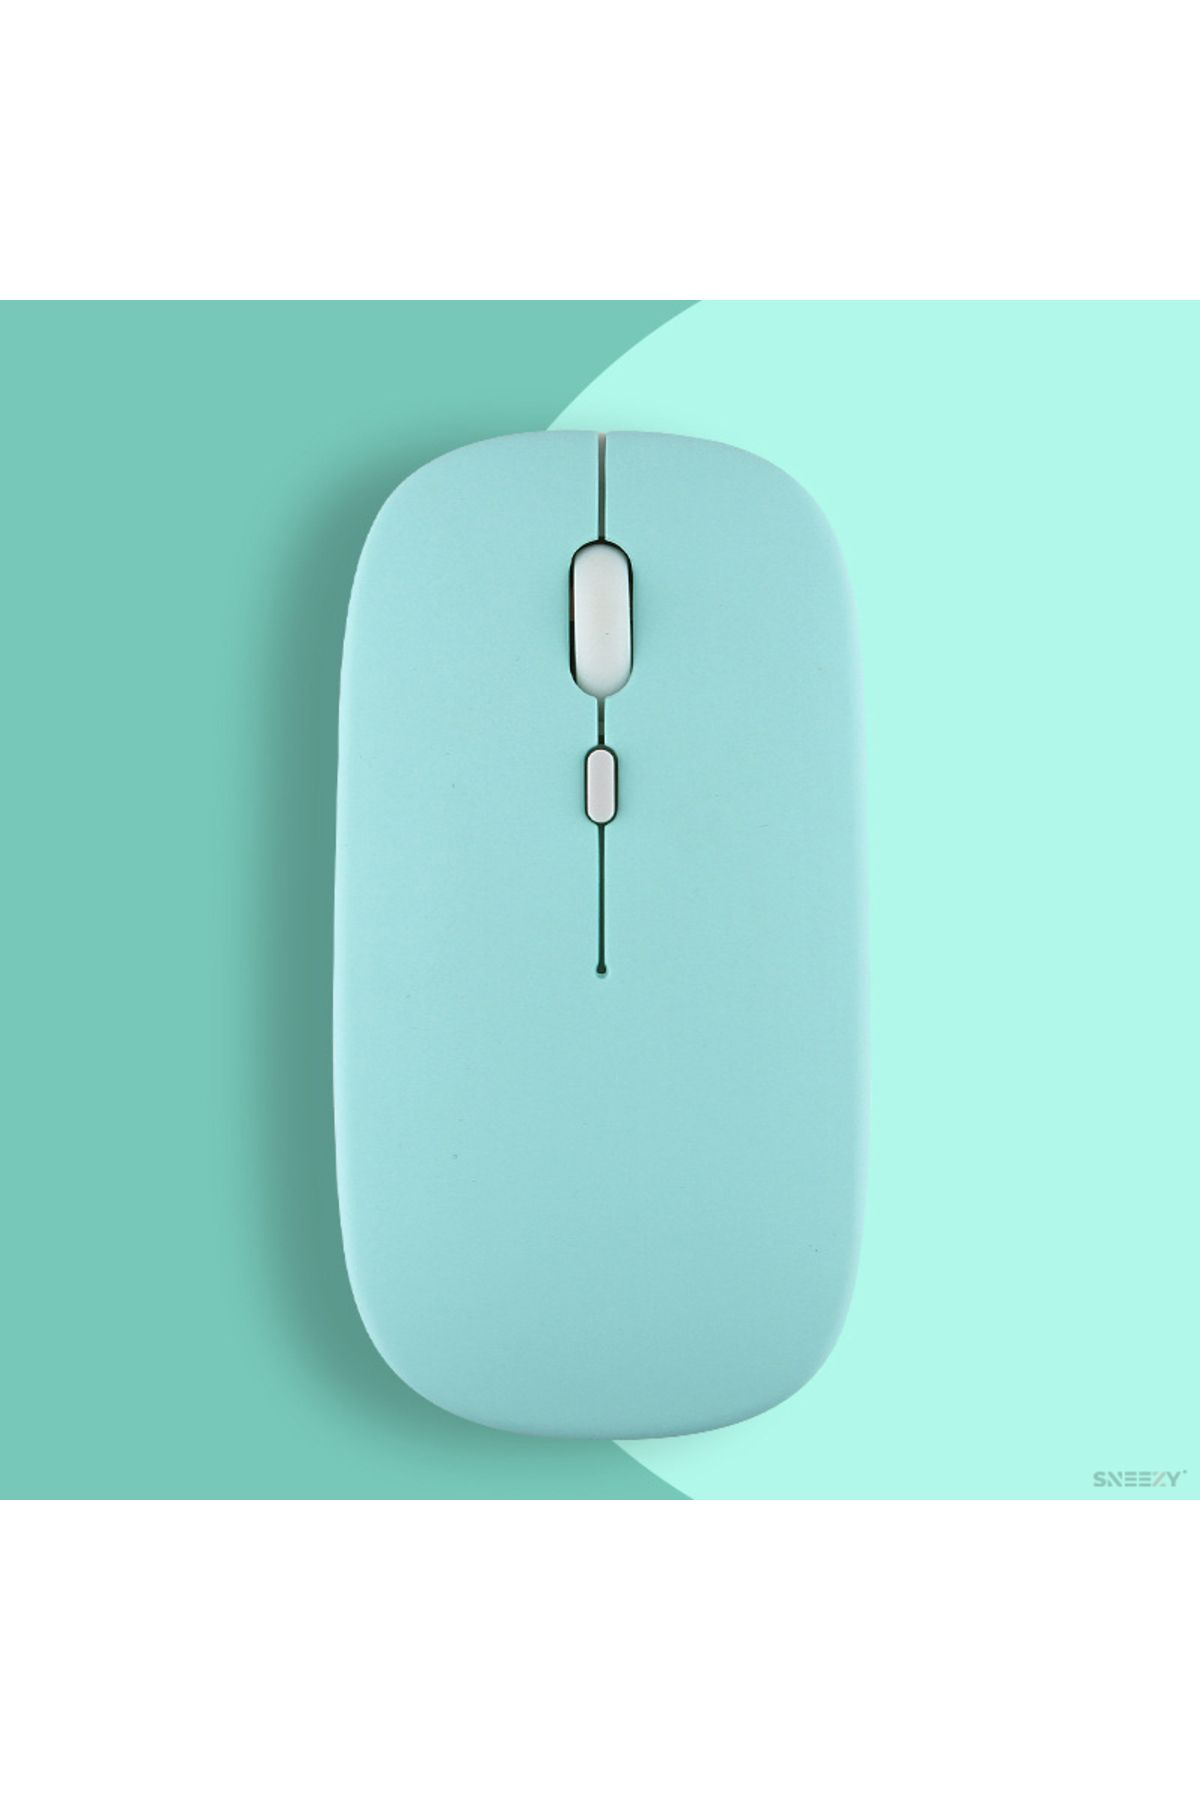 Sneezy Apple Macbook Şarj Edilebilir Sessiz Mouse Bluetooth + 2.4Hz Wifi Kablosuz Mouse Fare